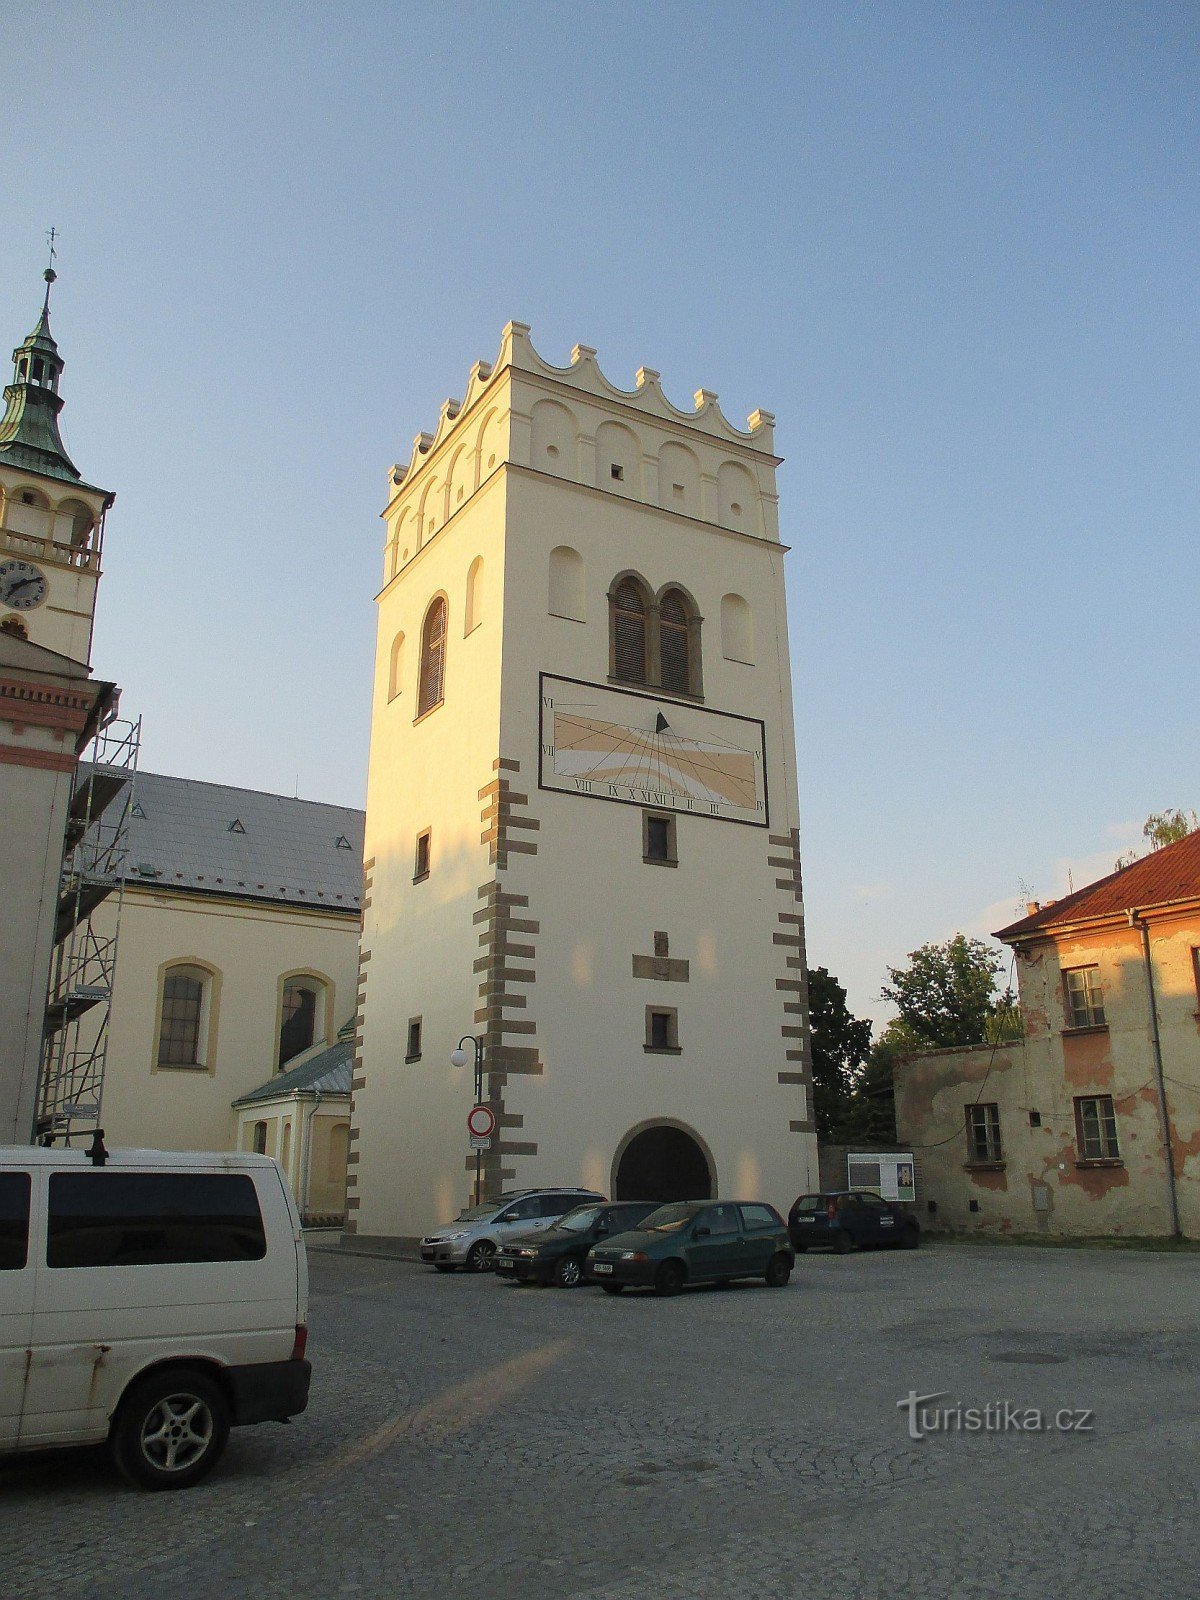 Lipník nad Bečvou - miejski rezerwat zabytków